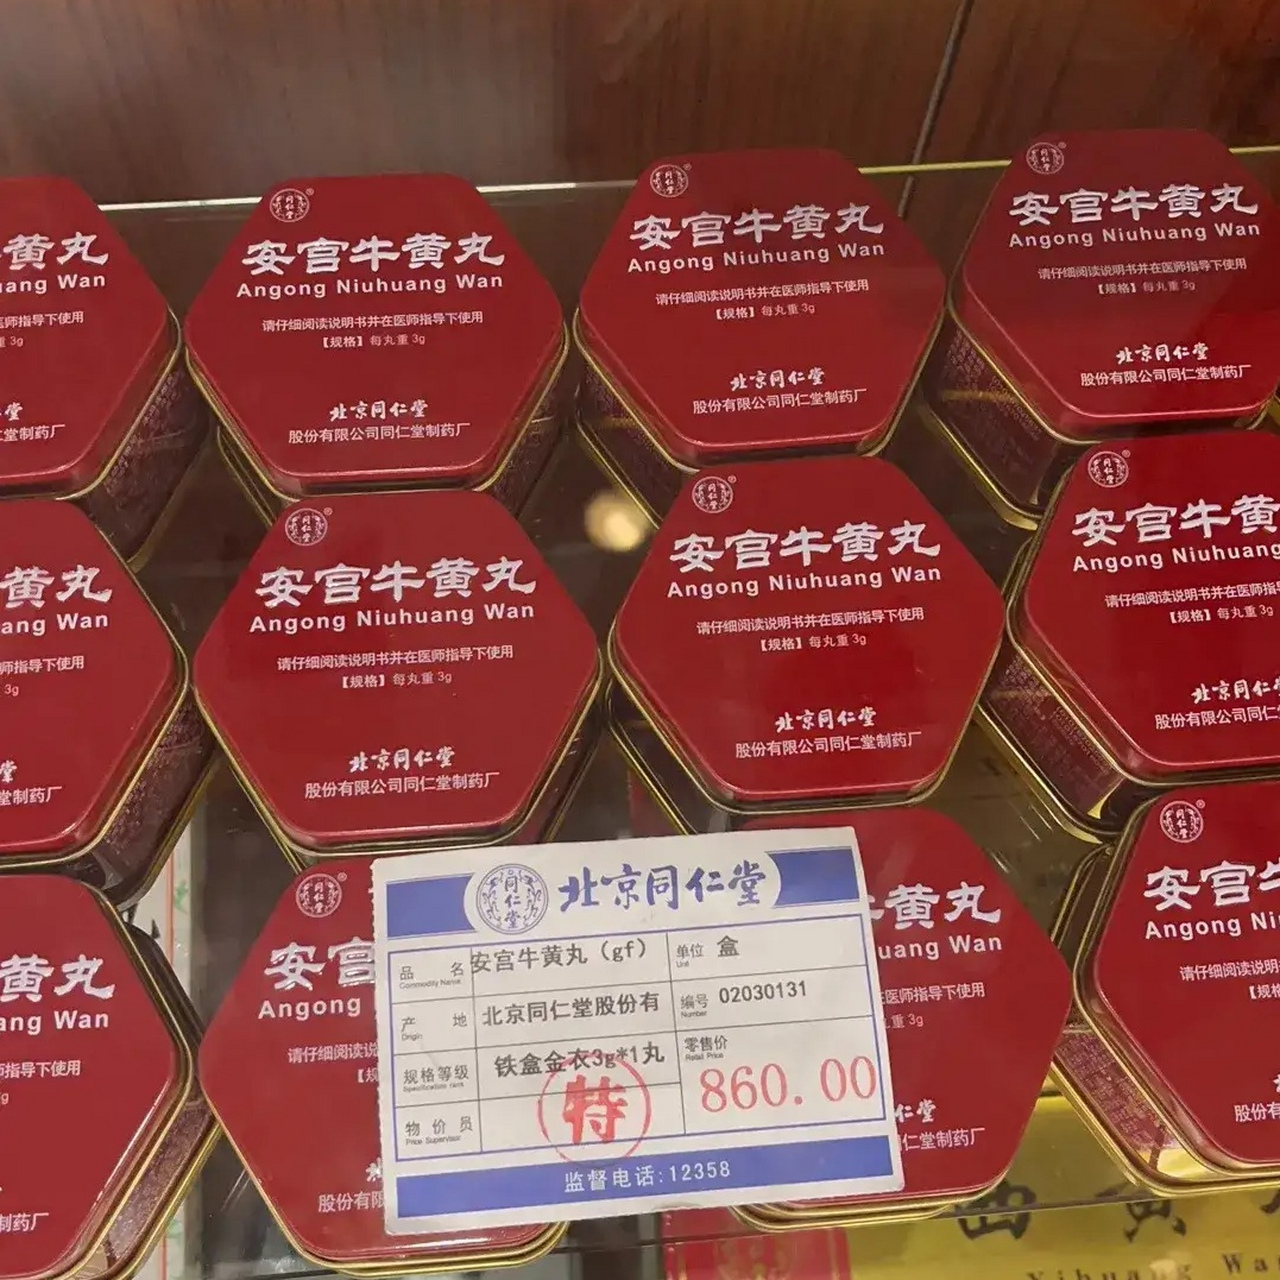 北京同仁堂的安宫牛黄丸,价格真是越来越贵了有没有懂的人科普下,老年